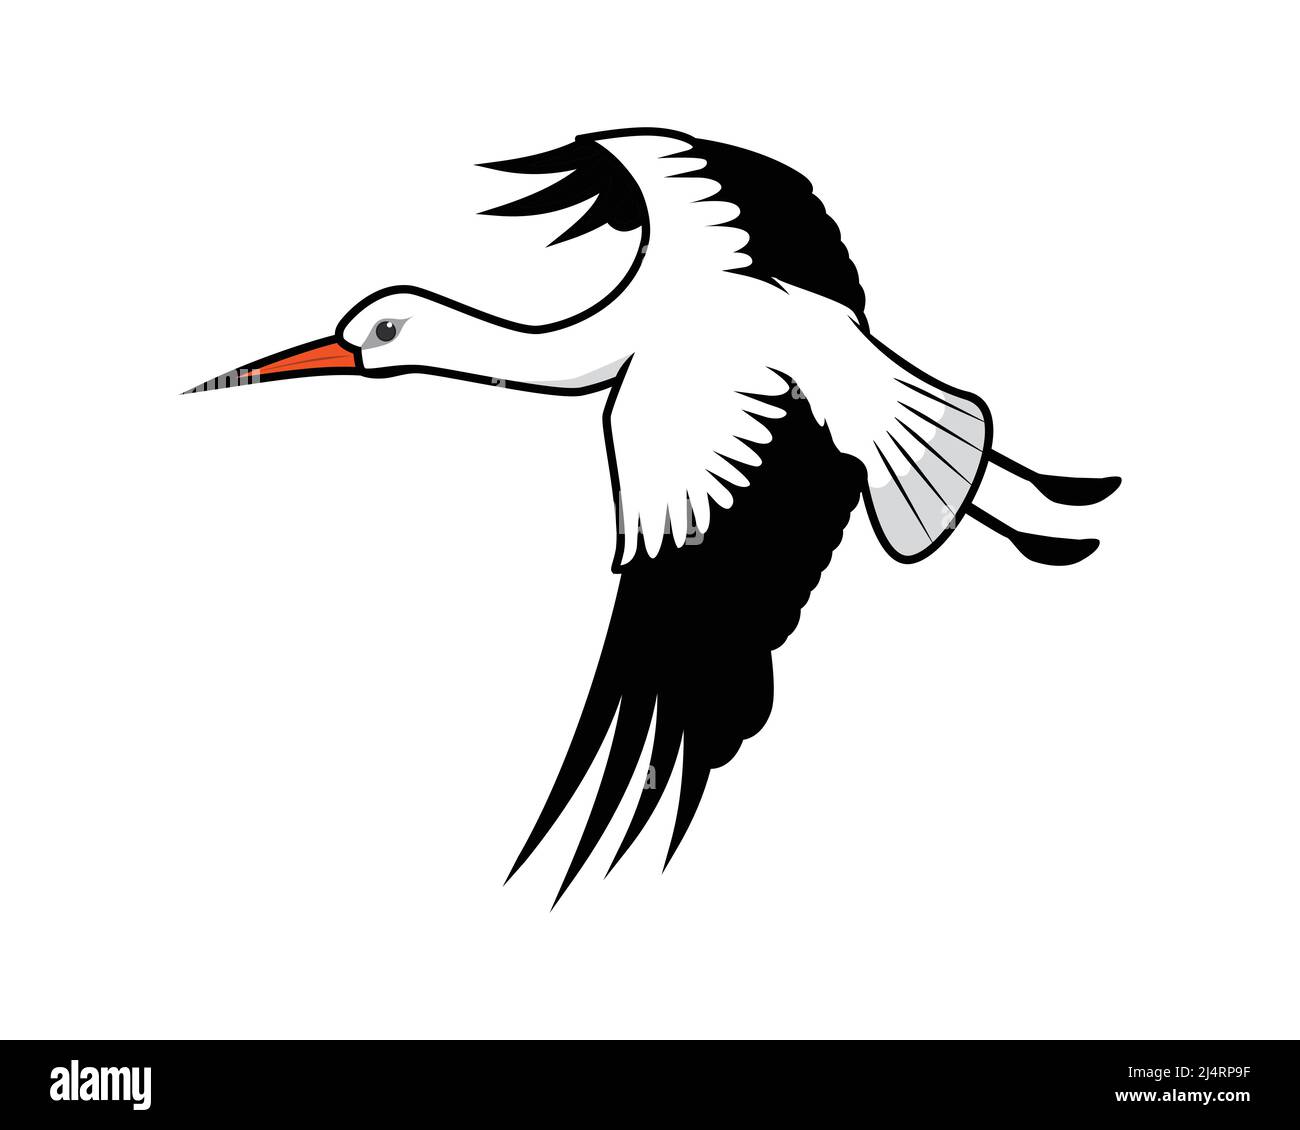 Detaillierte Flying Stork Illustration Vektor Stock Vektor